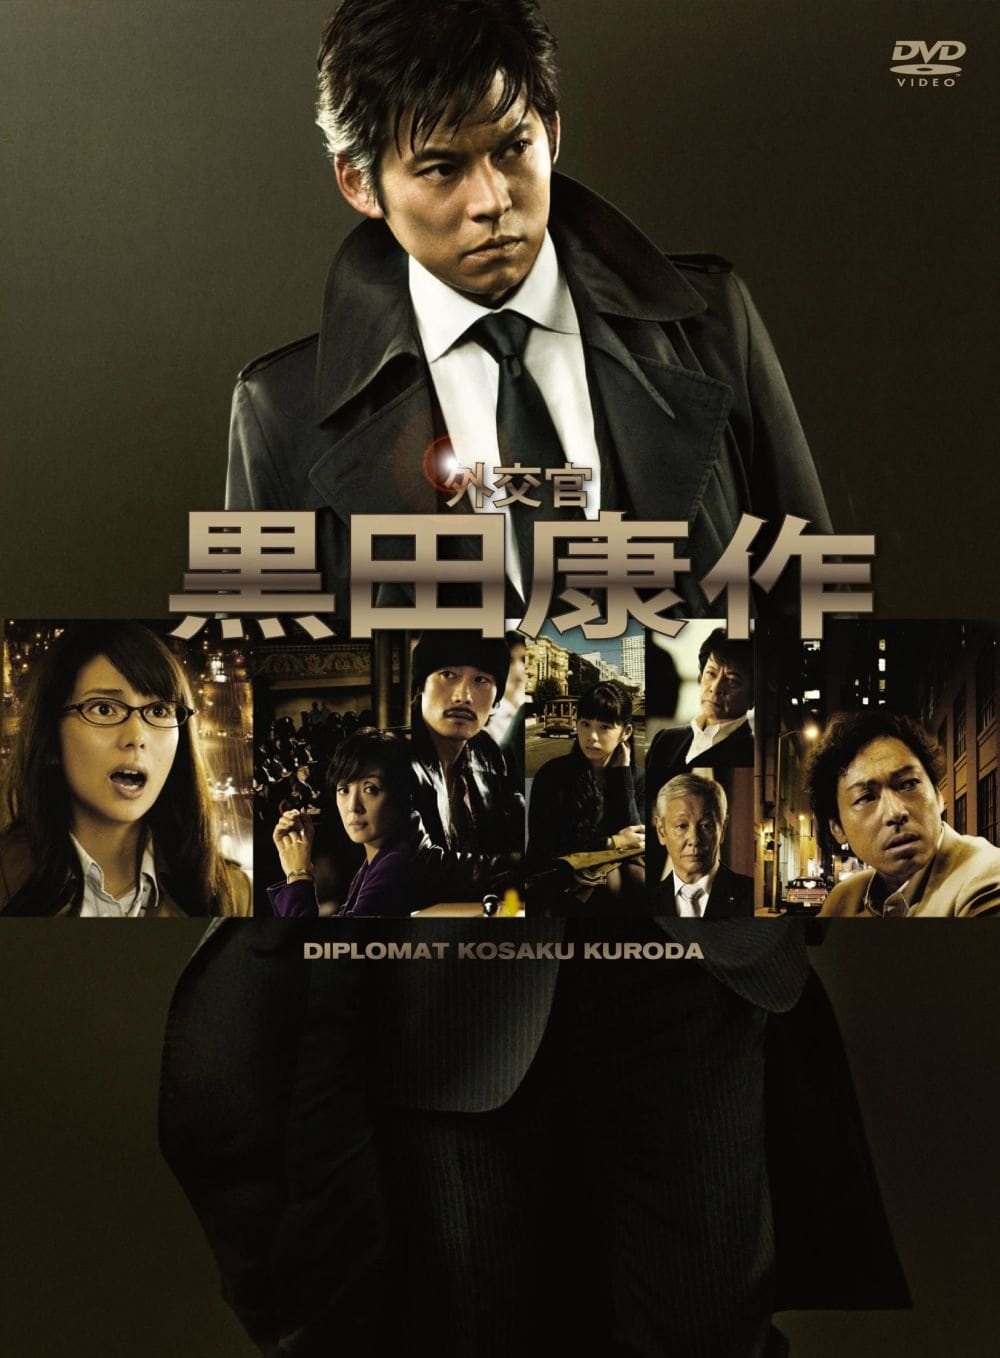 The Diplomat Kosaku Kuroda (2011)